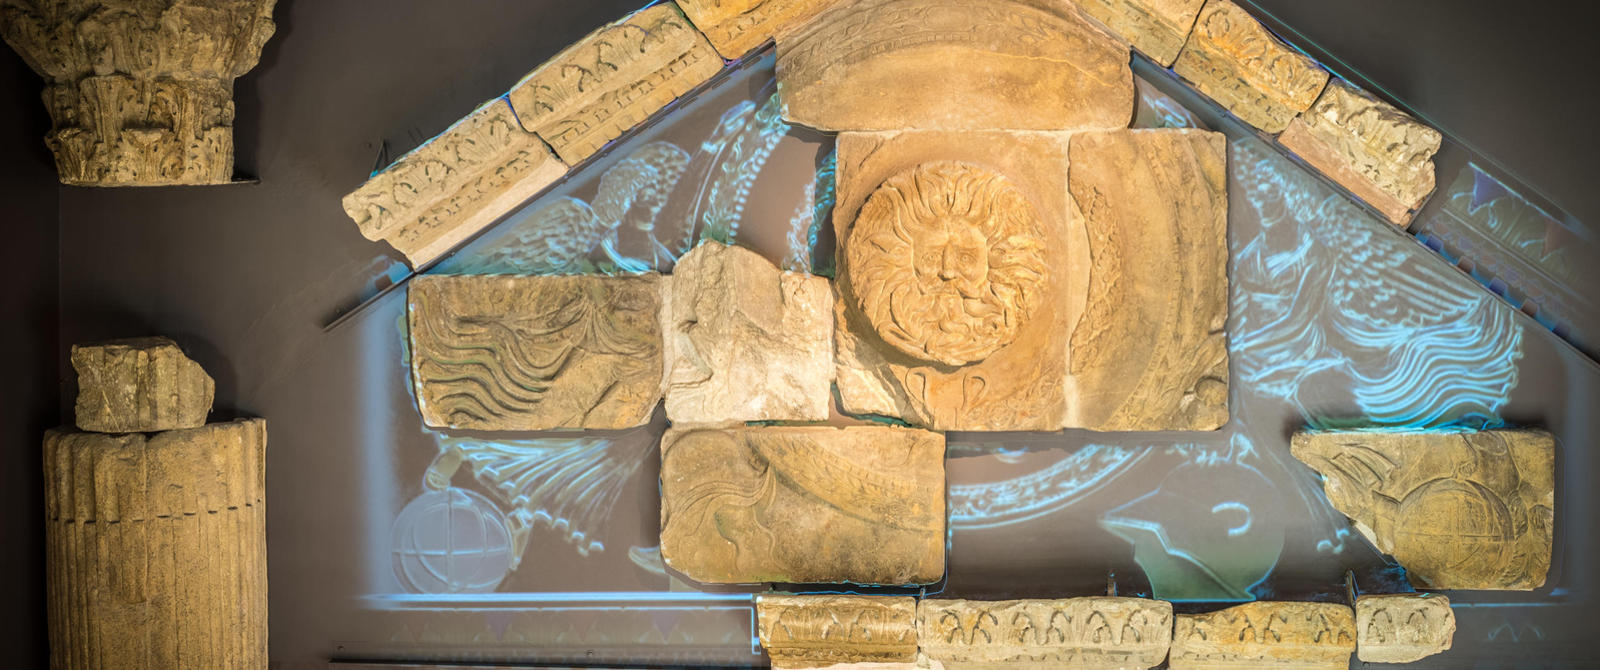 在罗马浴场博物馆排水管中发现的面具